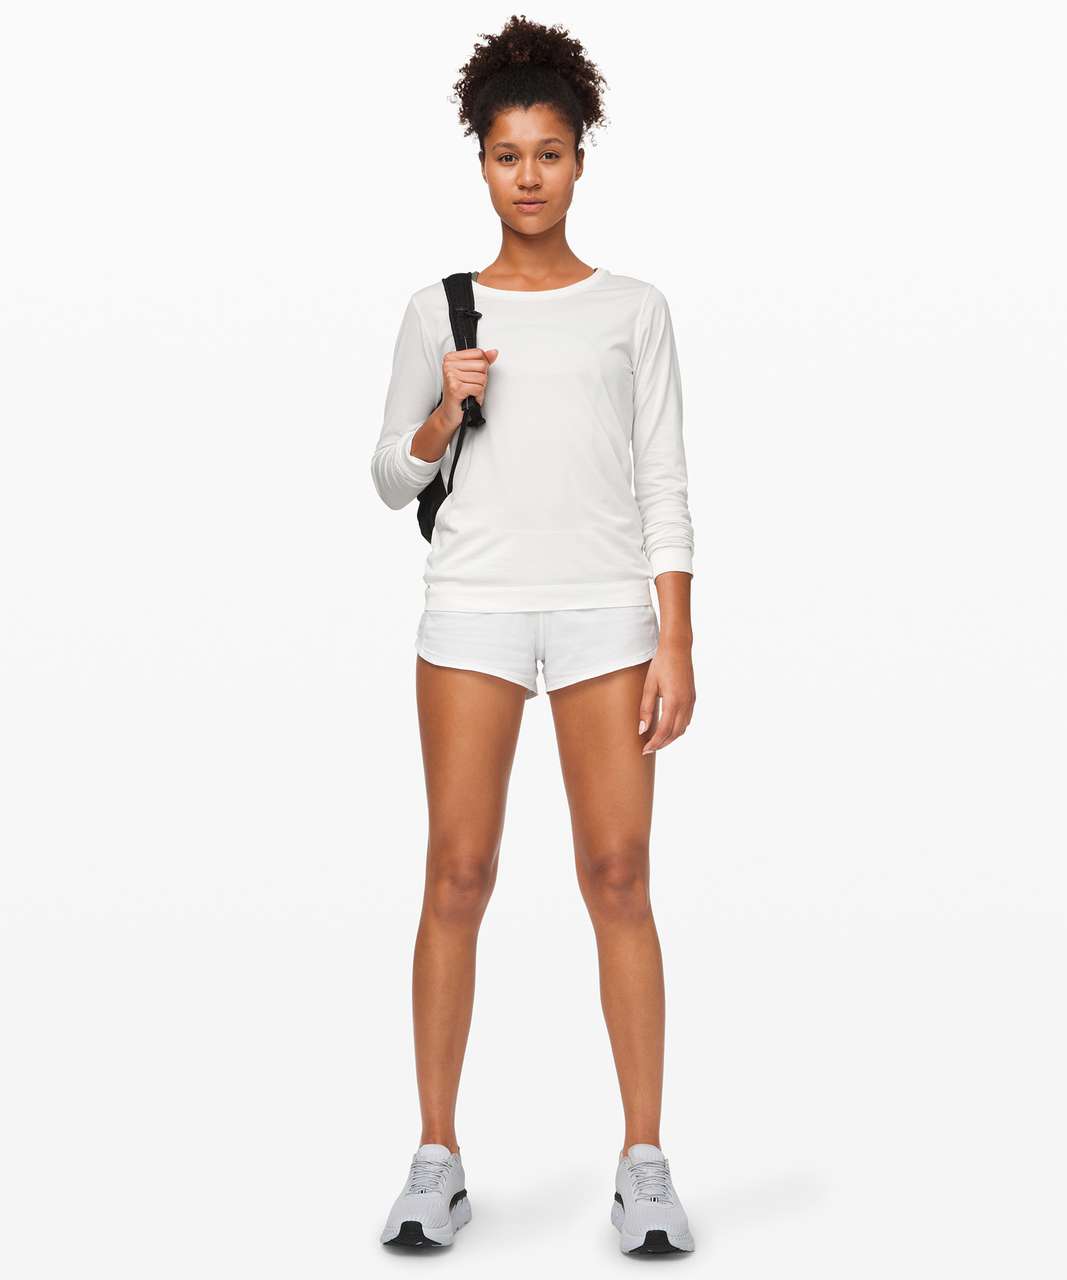 Lululemon White Speed Up Shorts 2.5” Size 0 - $29 (57% Off Retail